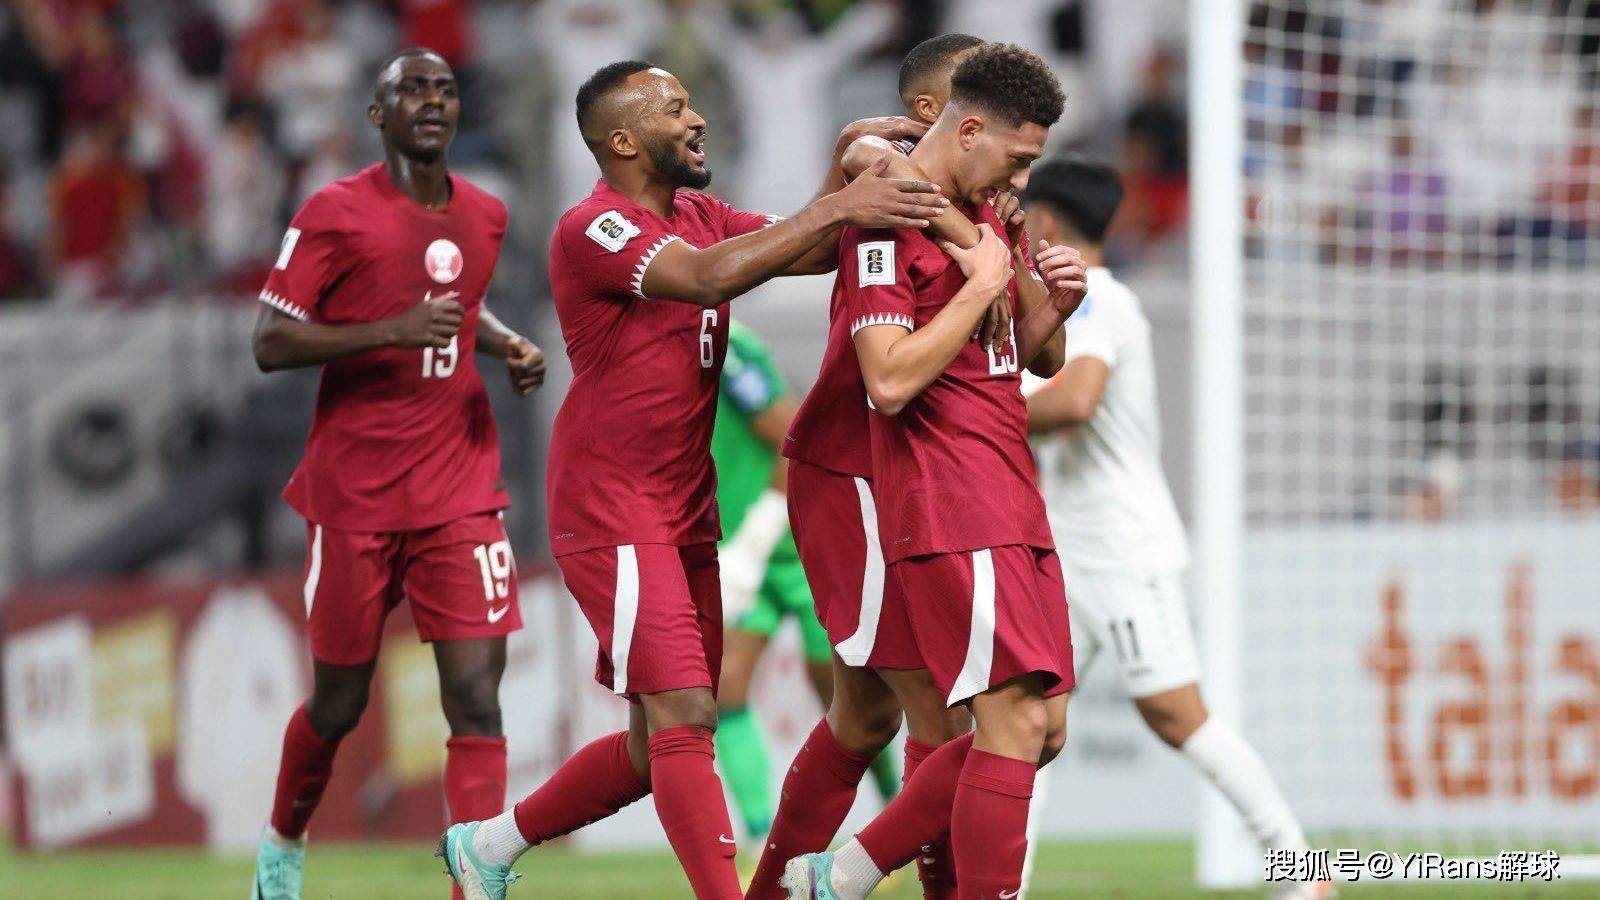 足球精选赛事分享,世界杯亚洲预选赛:科威特 vs 卡塔尔!